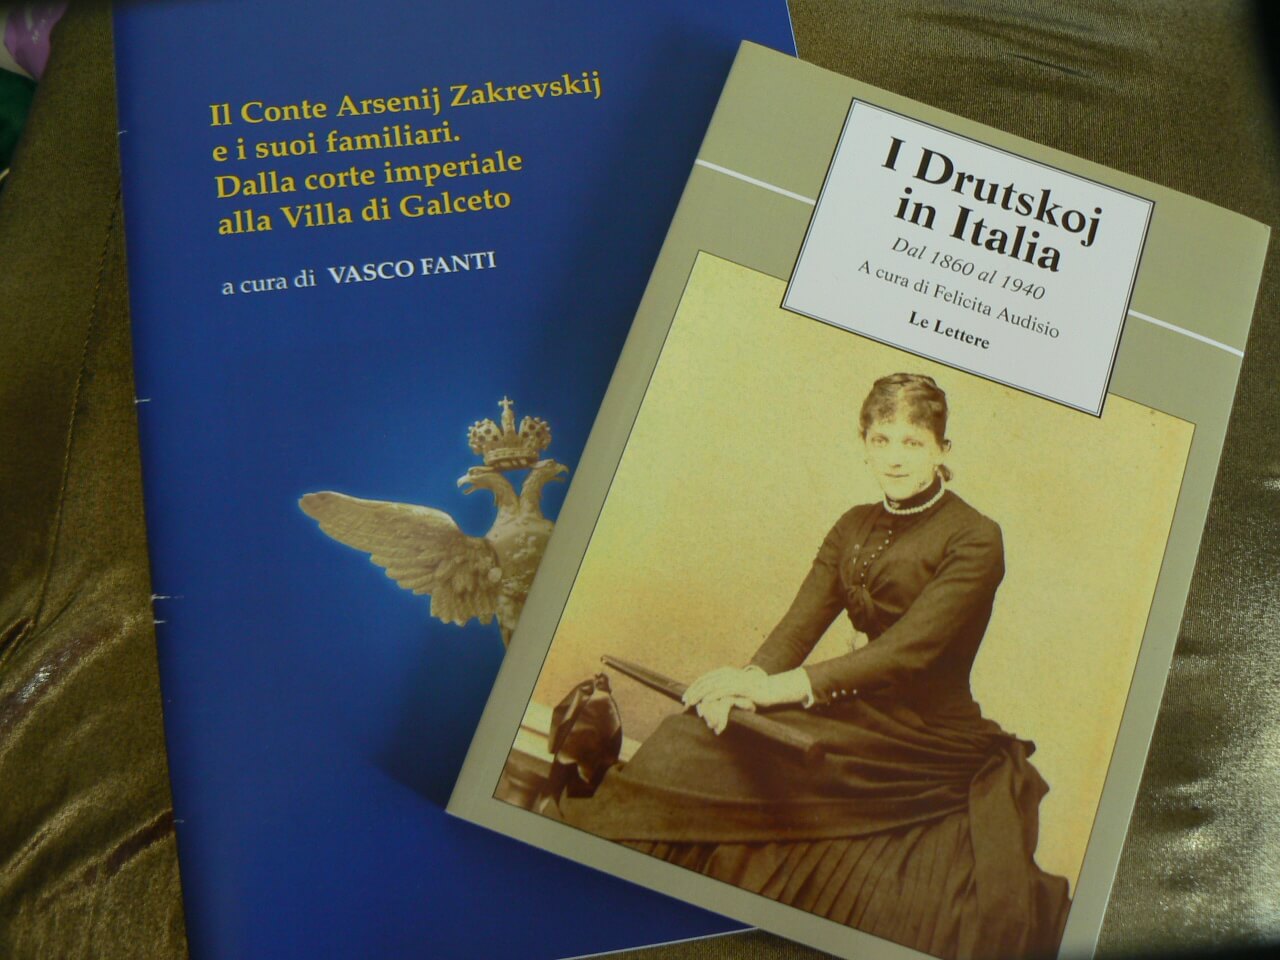 В Твери будет переведена и издана итальянская книга "I Drutskoj in Italia"